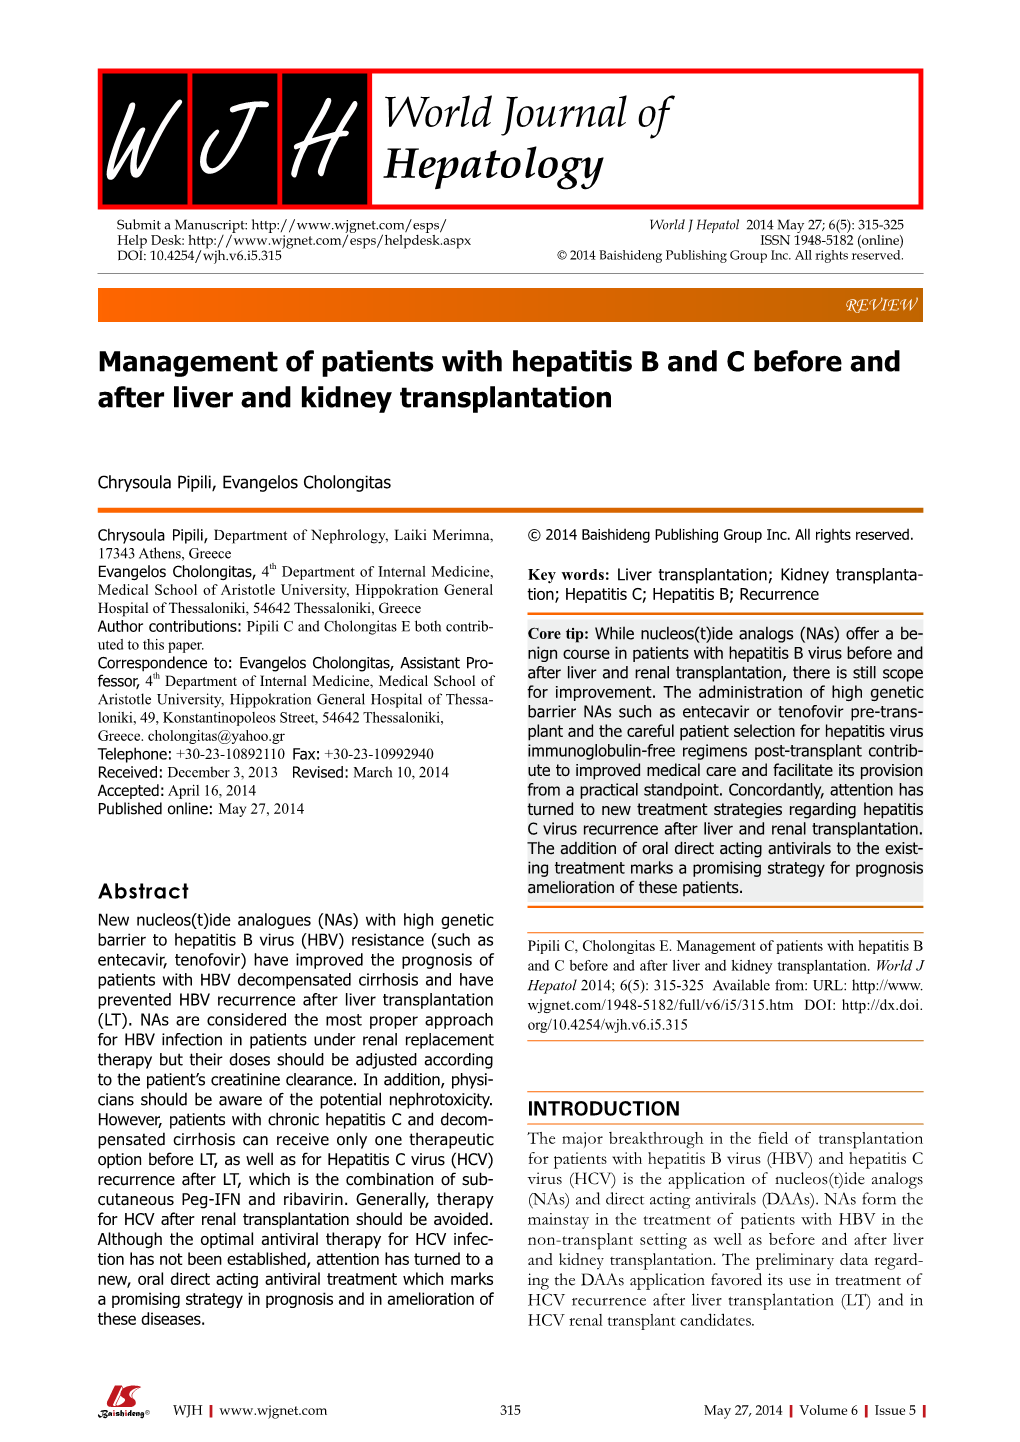 Μanagement of Patients with Hepatitis B and C Before and After Liver and Kidney Transplantation